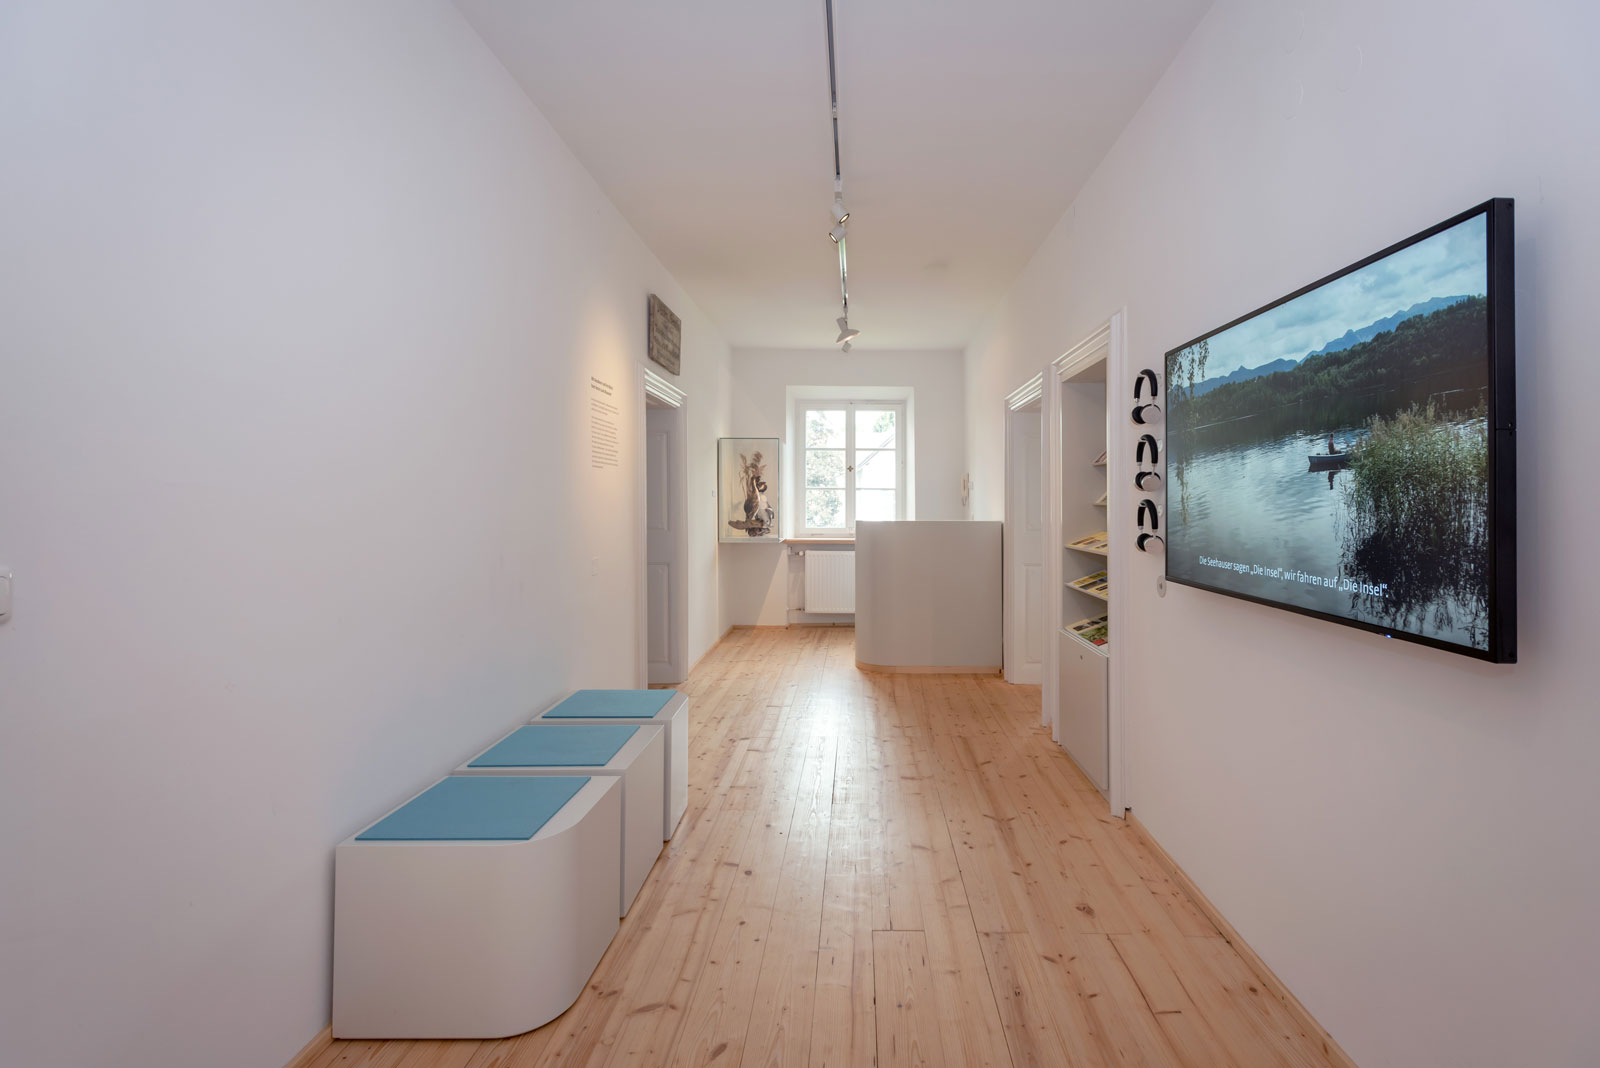 Das Referenzbild für Ausstellungsgestaltung aus der Dauerausstellung Seehausen und der Staffelsee zeigt eine Filmstation im Empfangsbereich.